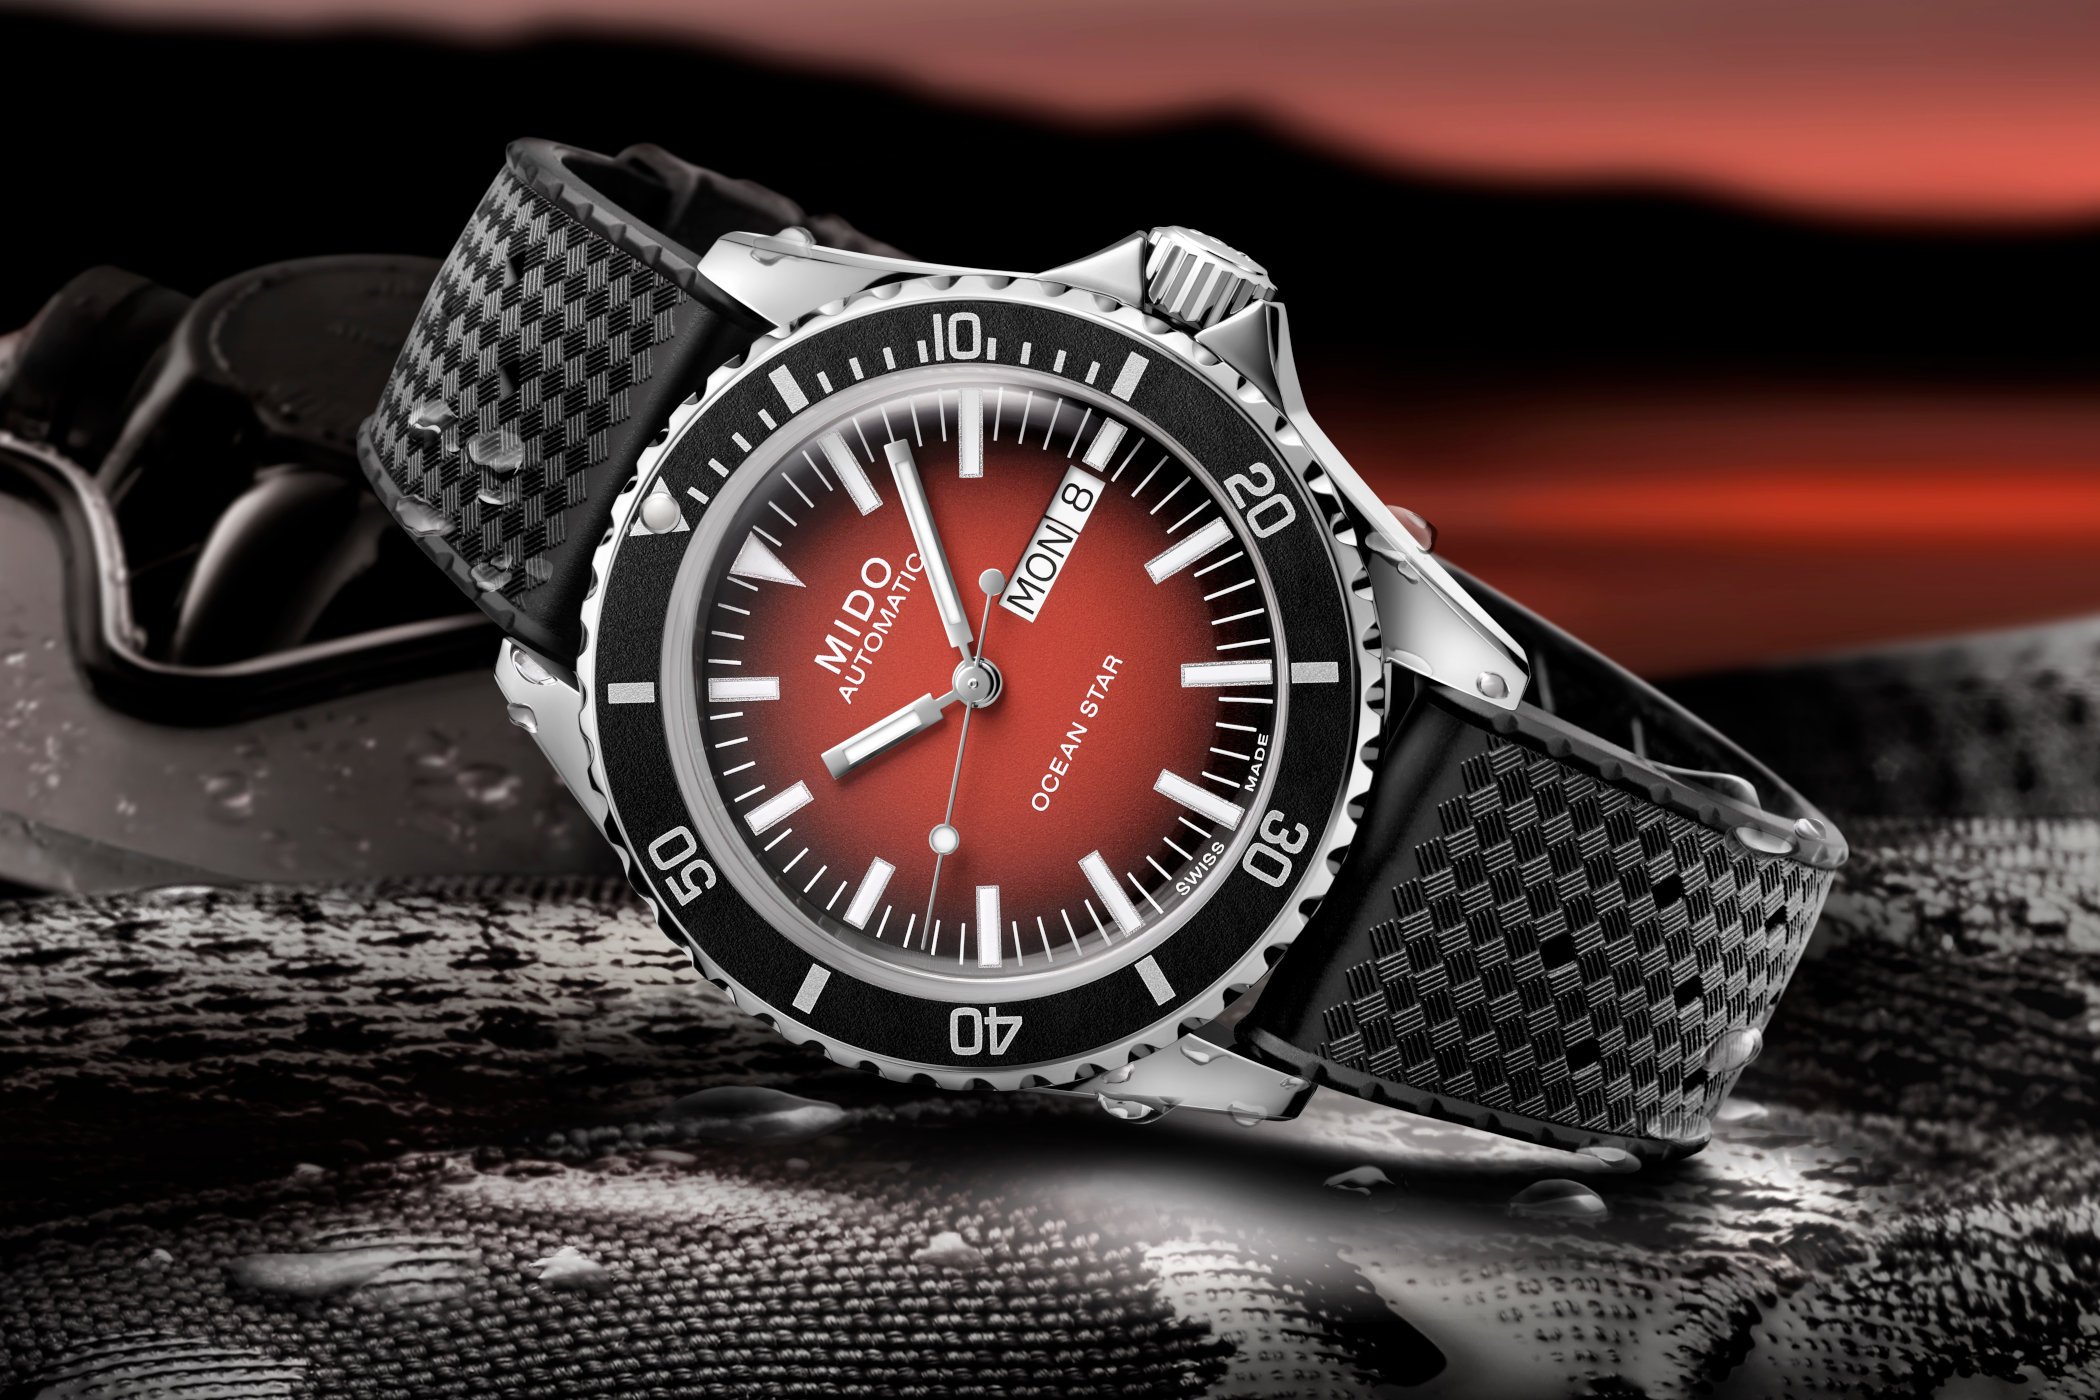 Mido представляет часы Ocean Star Tribute Gradient с эффектным красным циферблатом